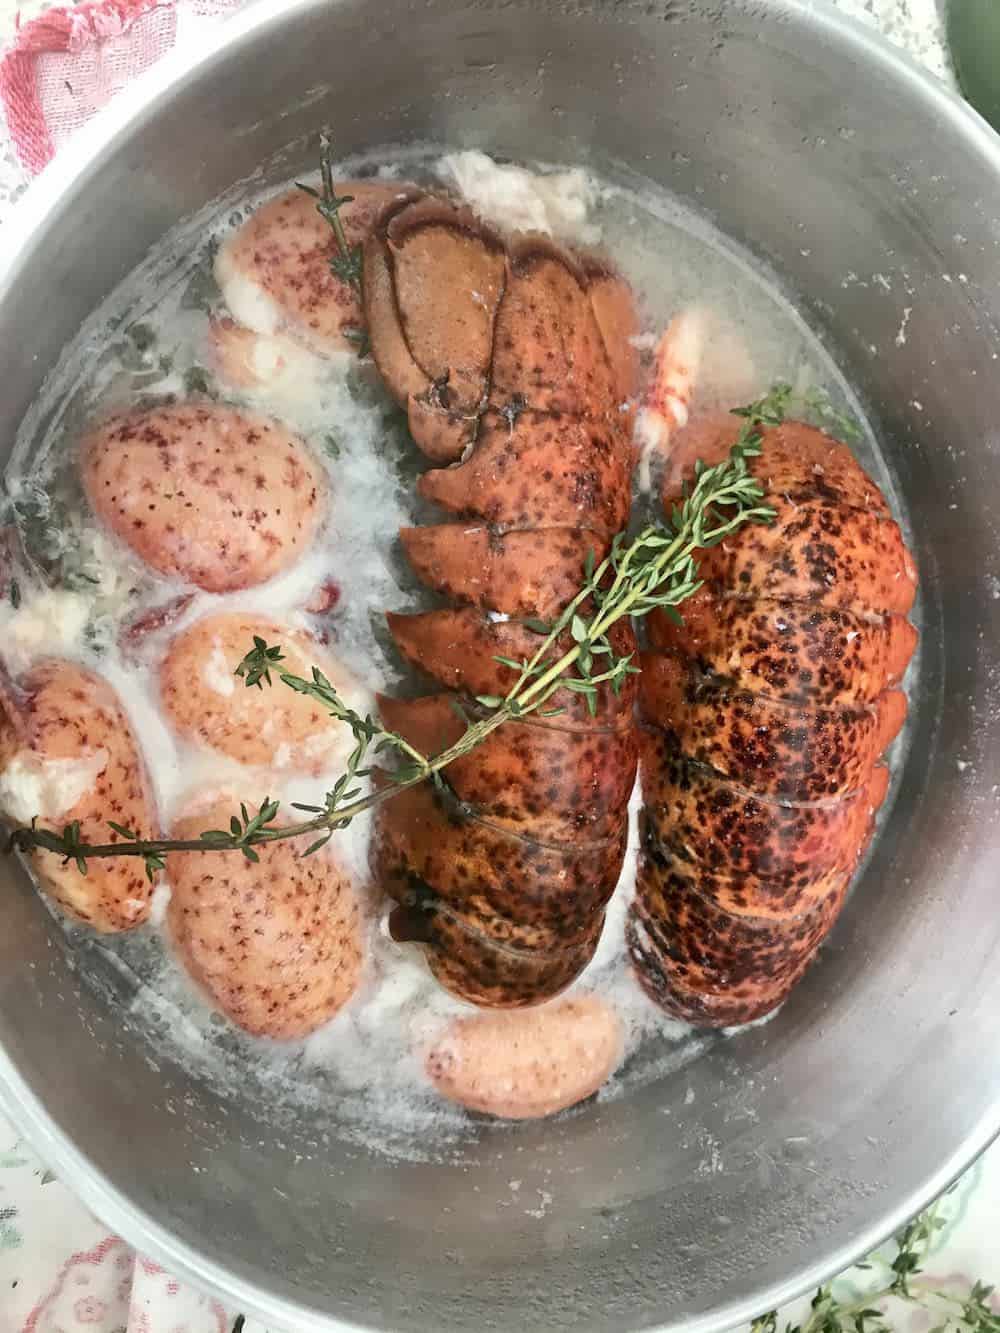 Lobster poaching in wine in a steel pot.